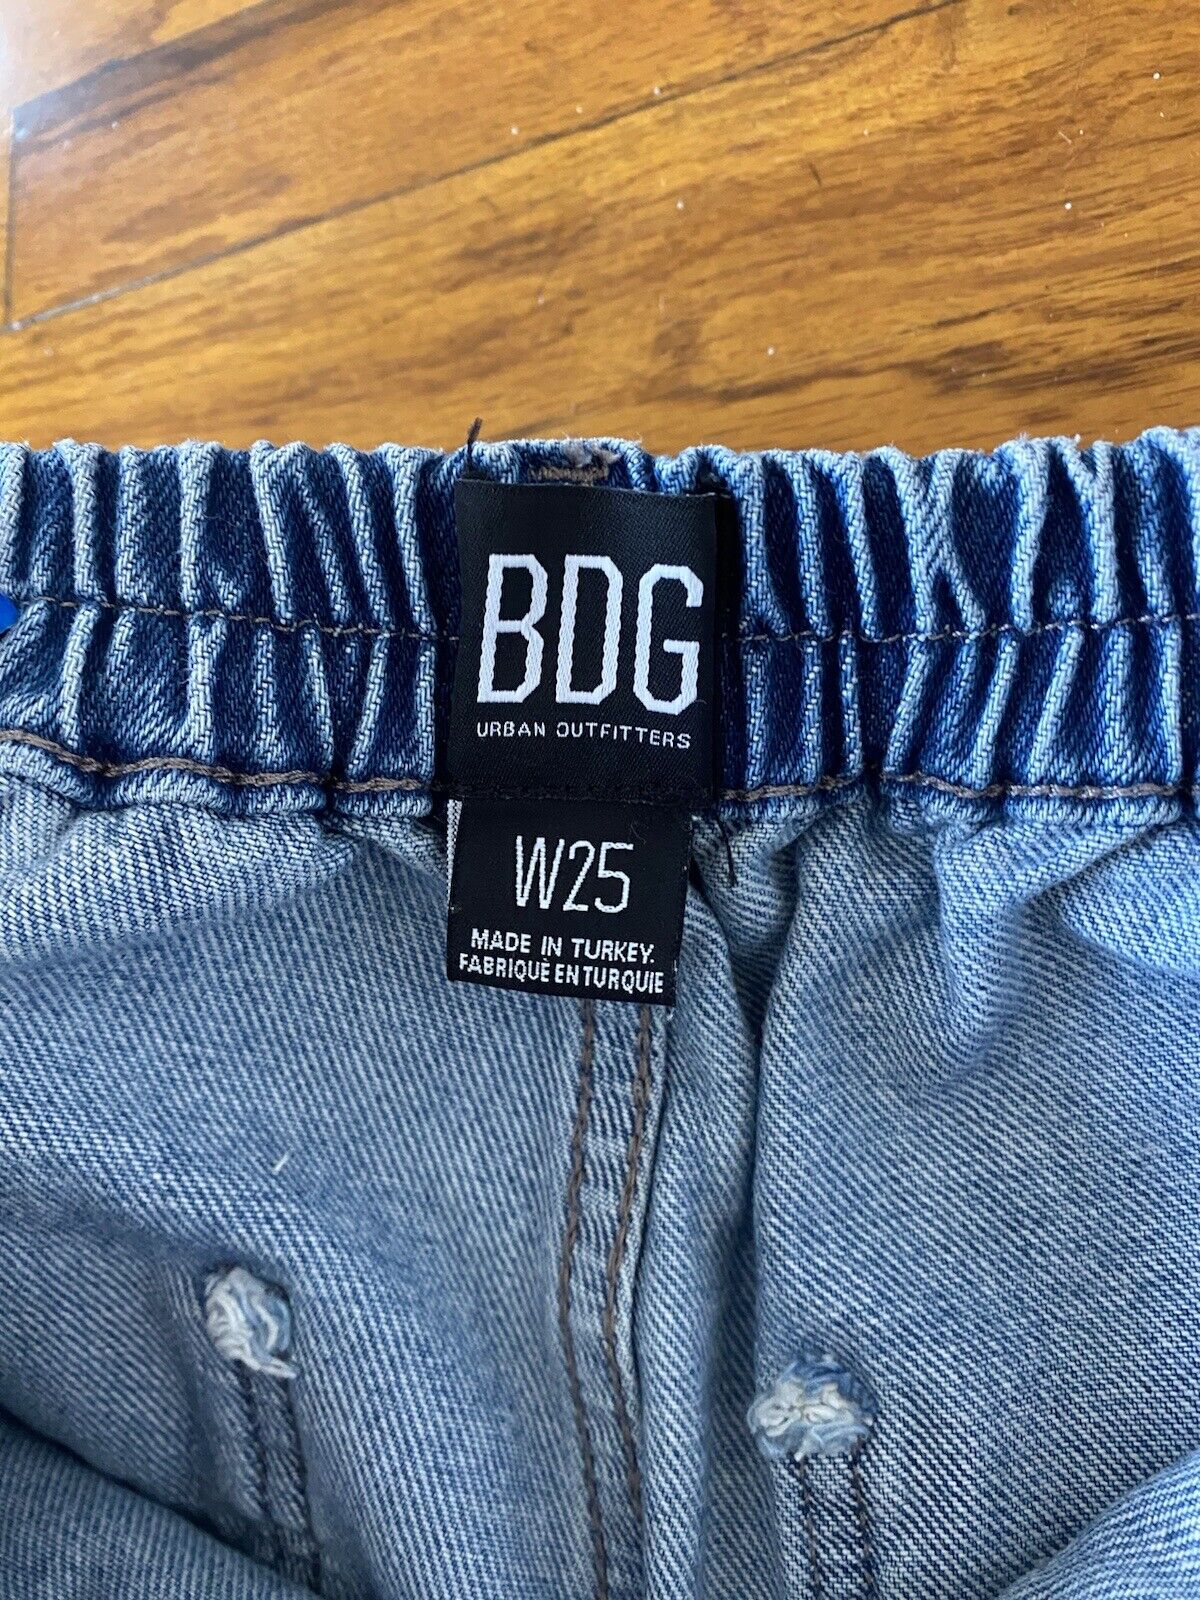 Blue Jeans Denim Joggers - BDG - Size 25 Waist